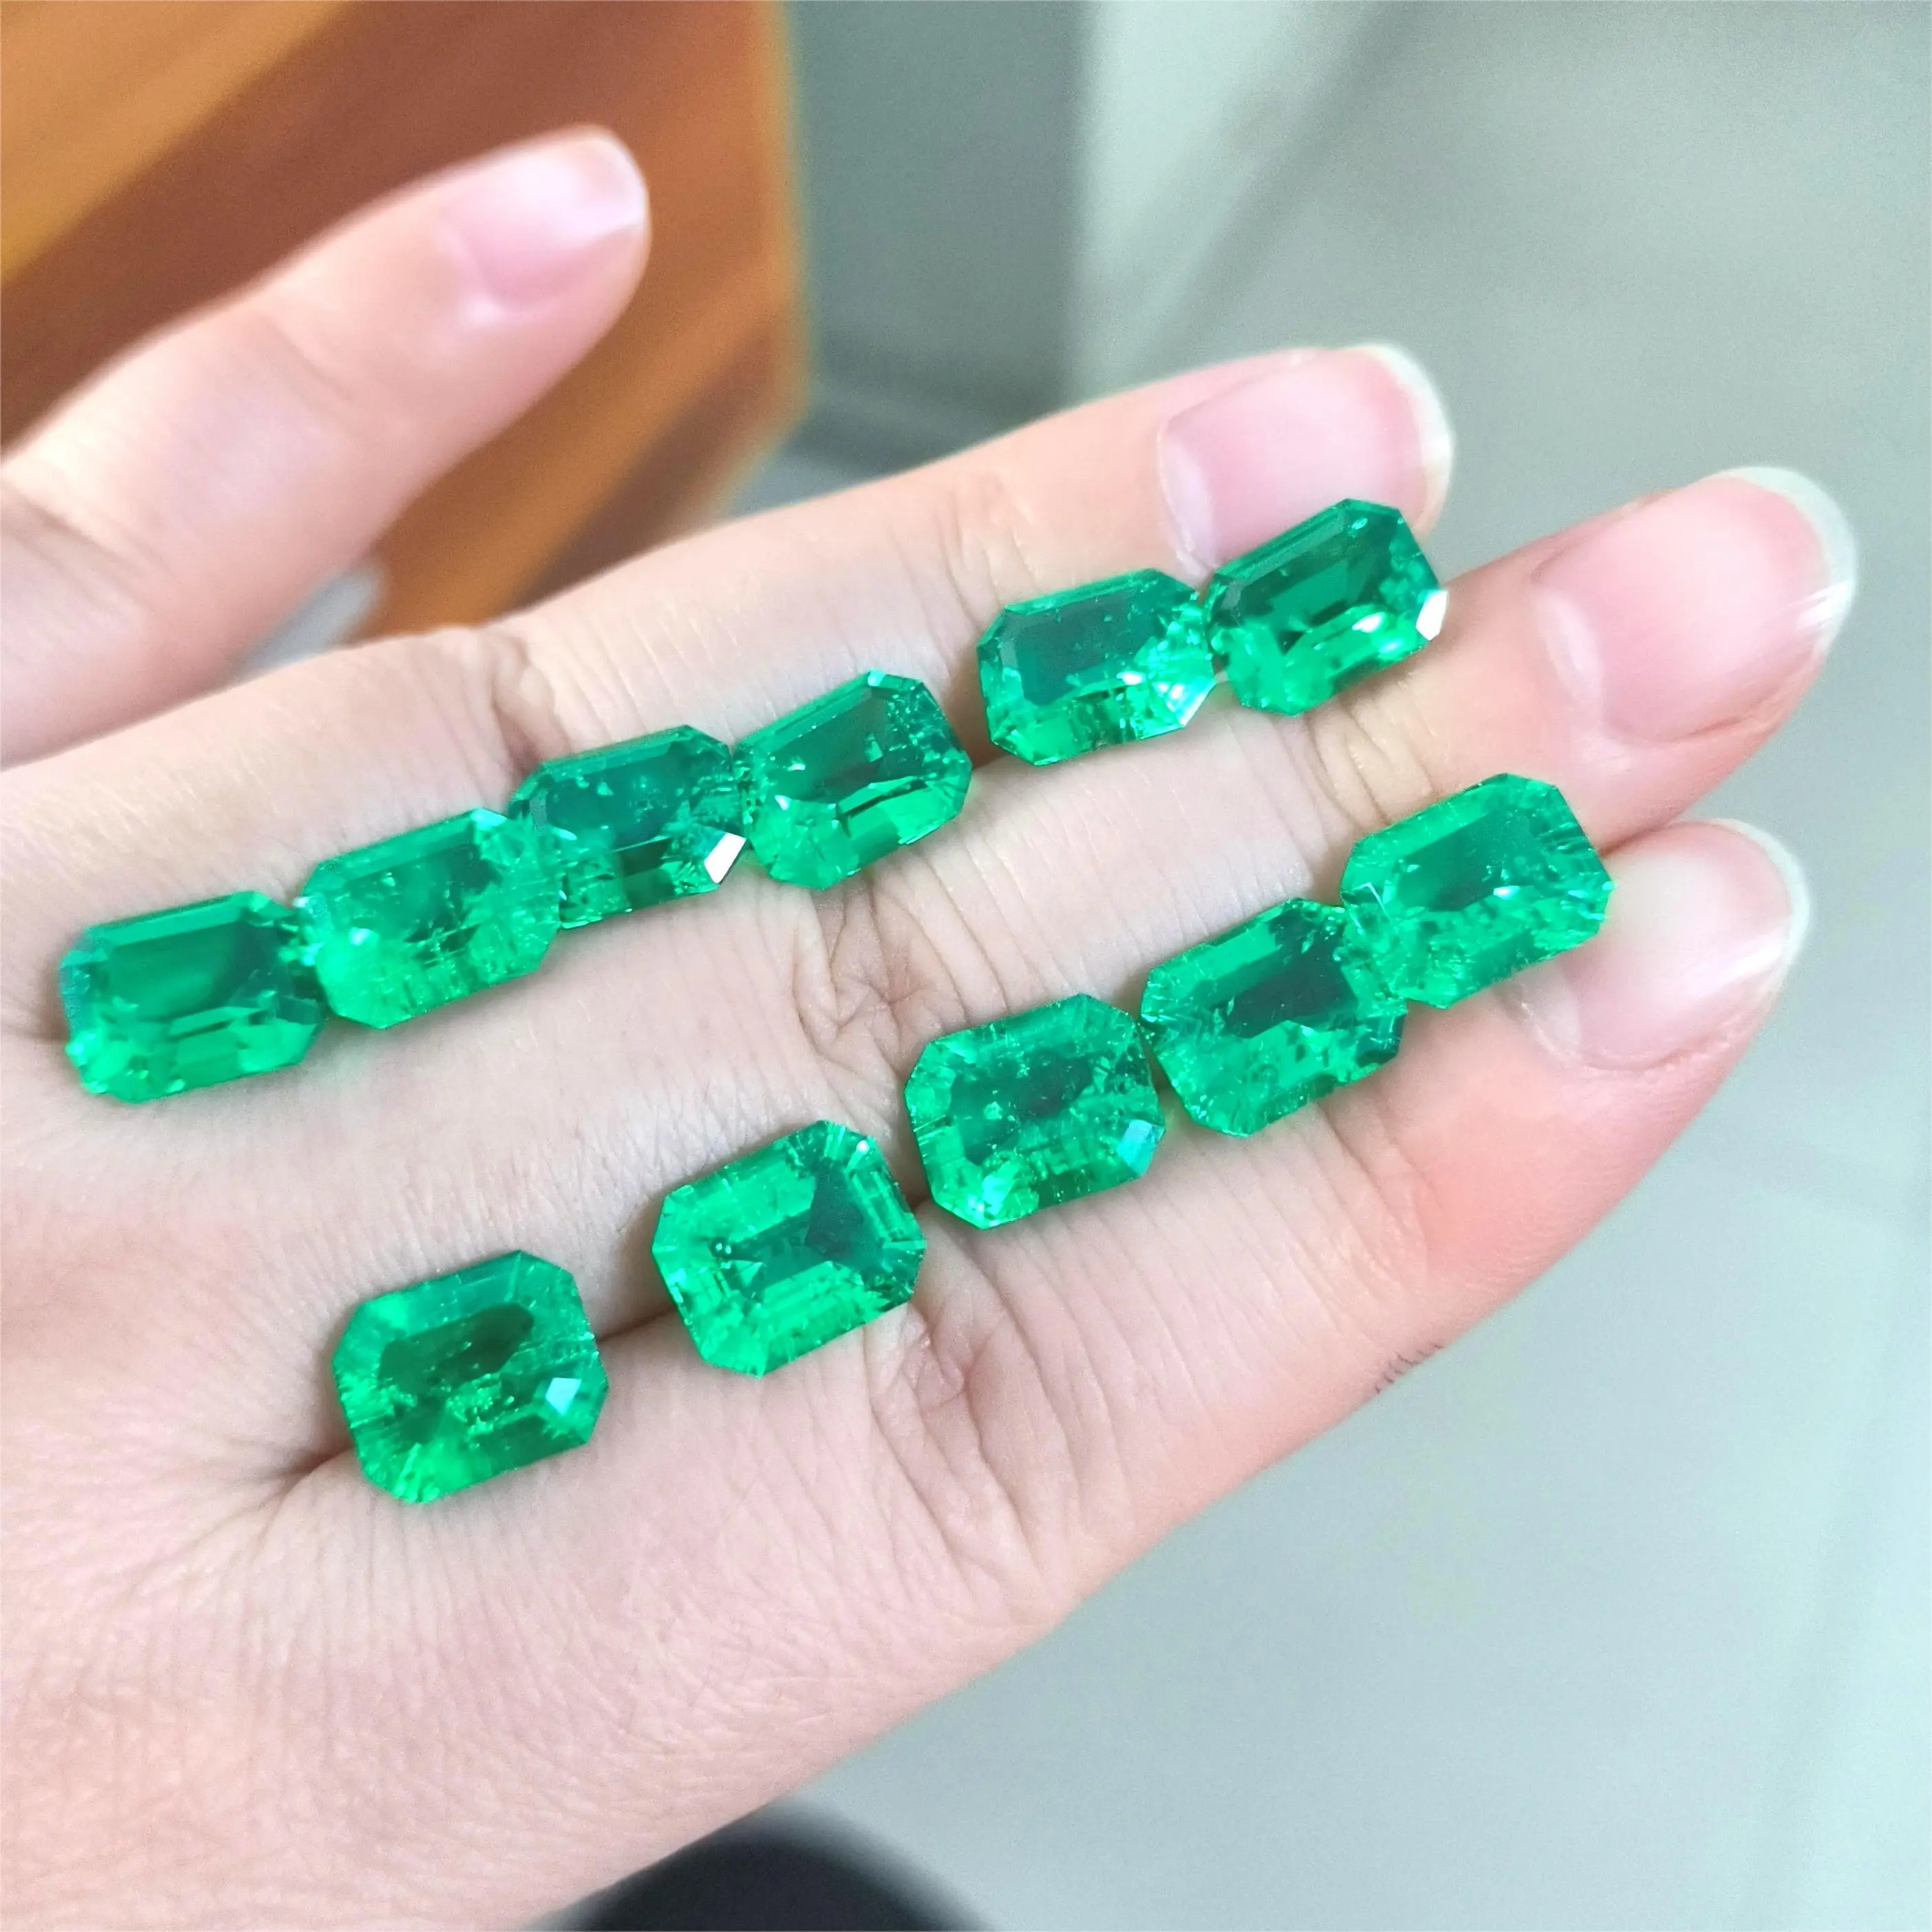 Laboratório crescido esmeralda feito de esmeralda hidrotérmica em formato de octogão, pedra esmeralda havaiana, preço baixo por carat